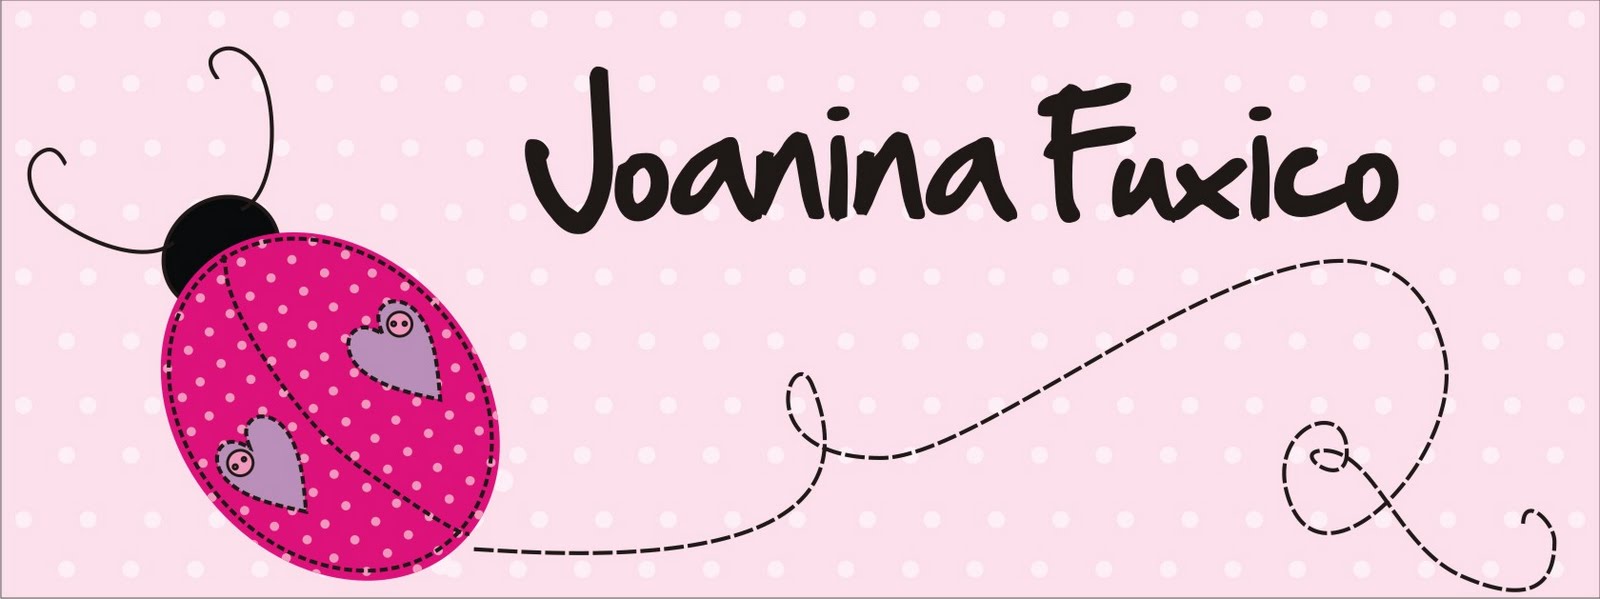 Joanina Fuxico